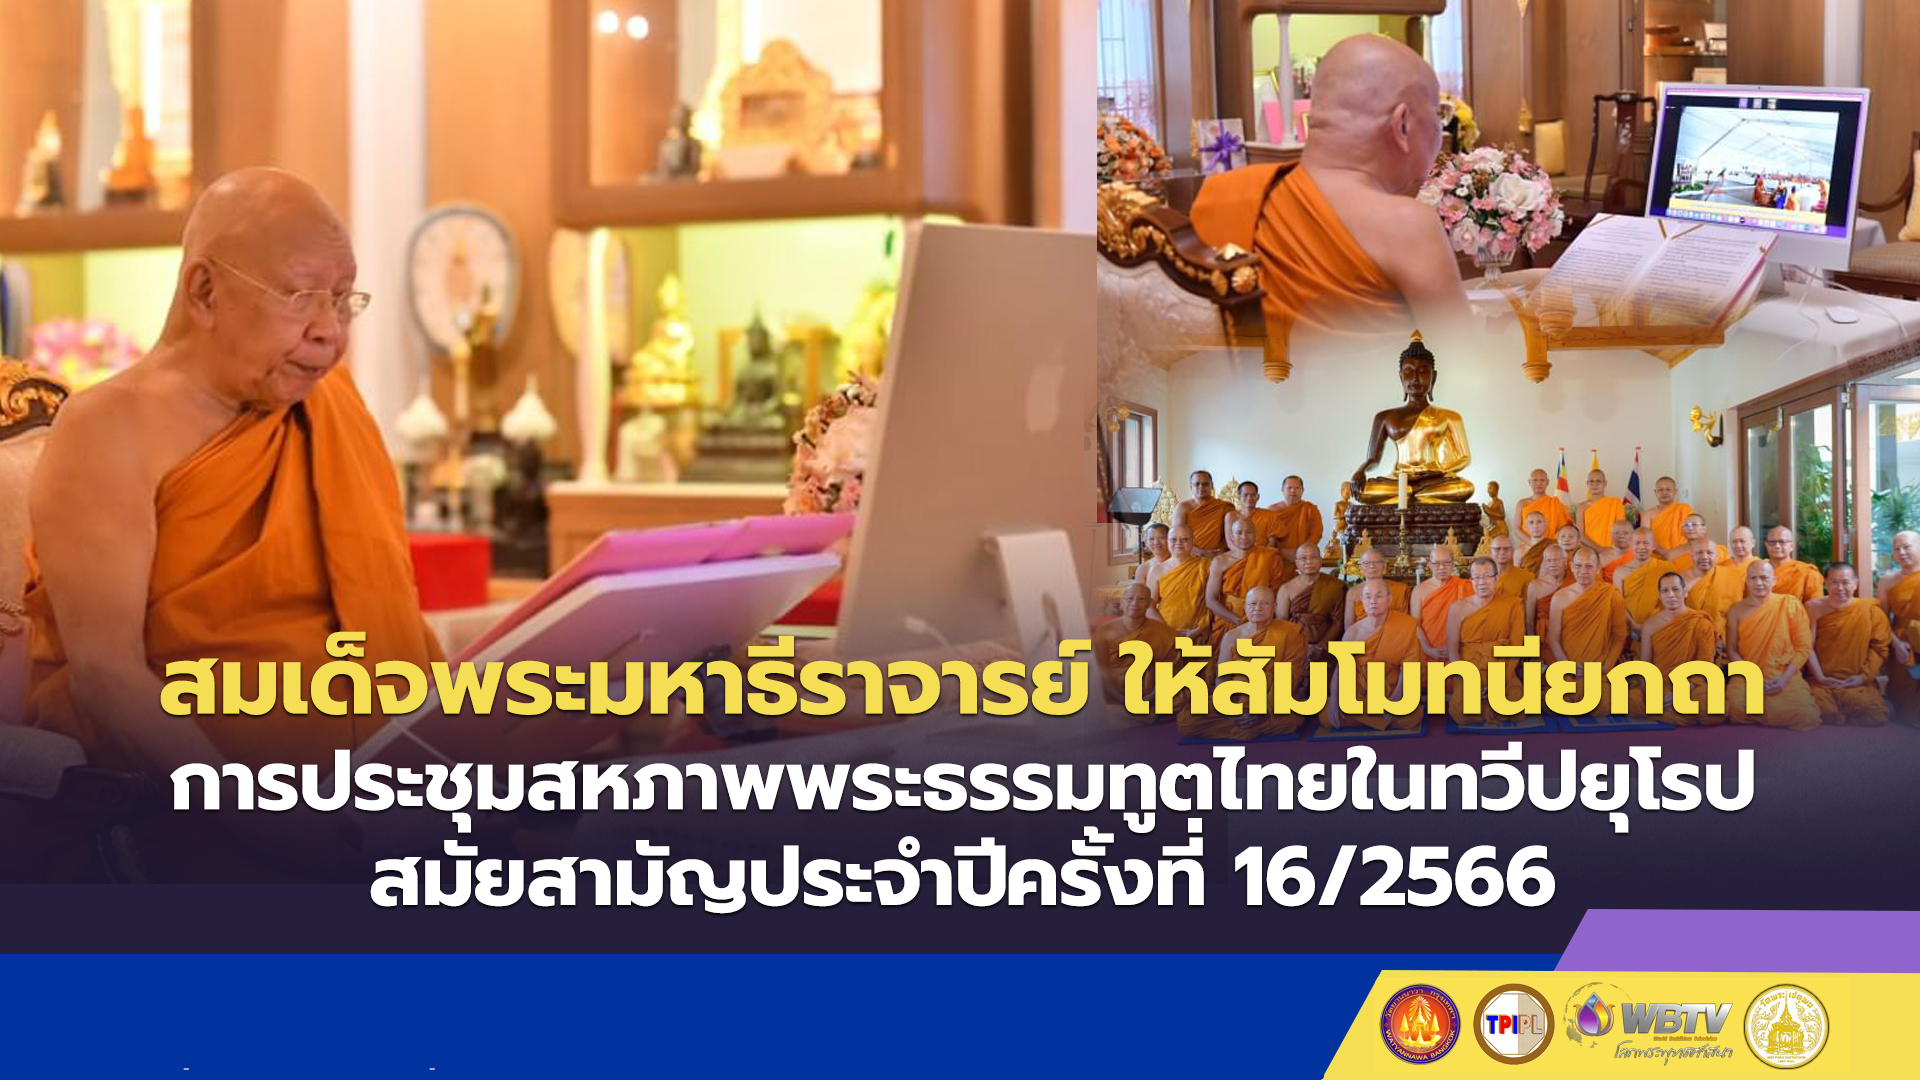 สมเด็จพระมหาธีราจารย์ ให้สัมโมทนียกถาการประชุมสหภาพพระธรรมทูตไทยในทวีปยุโรป สมัยสามัญประจำปี ครั้งที่ 16/2566